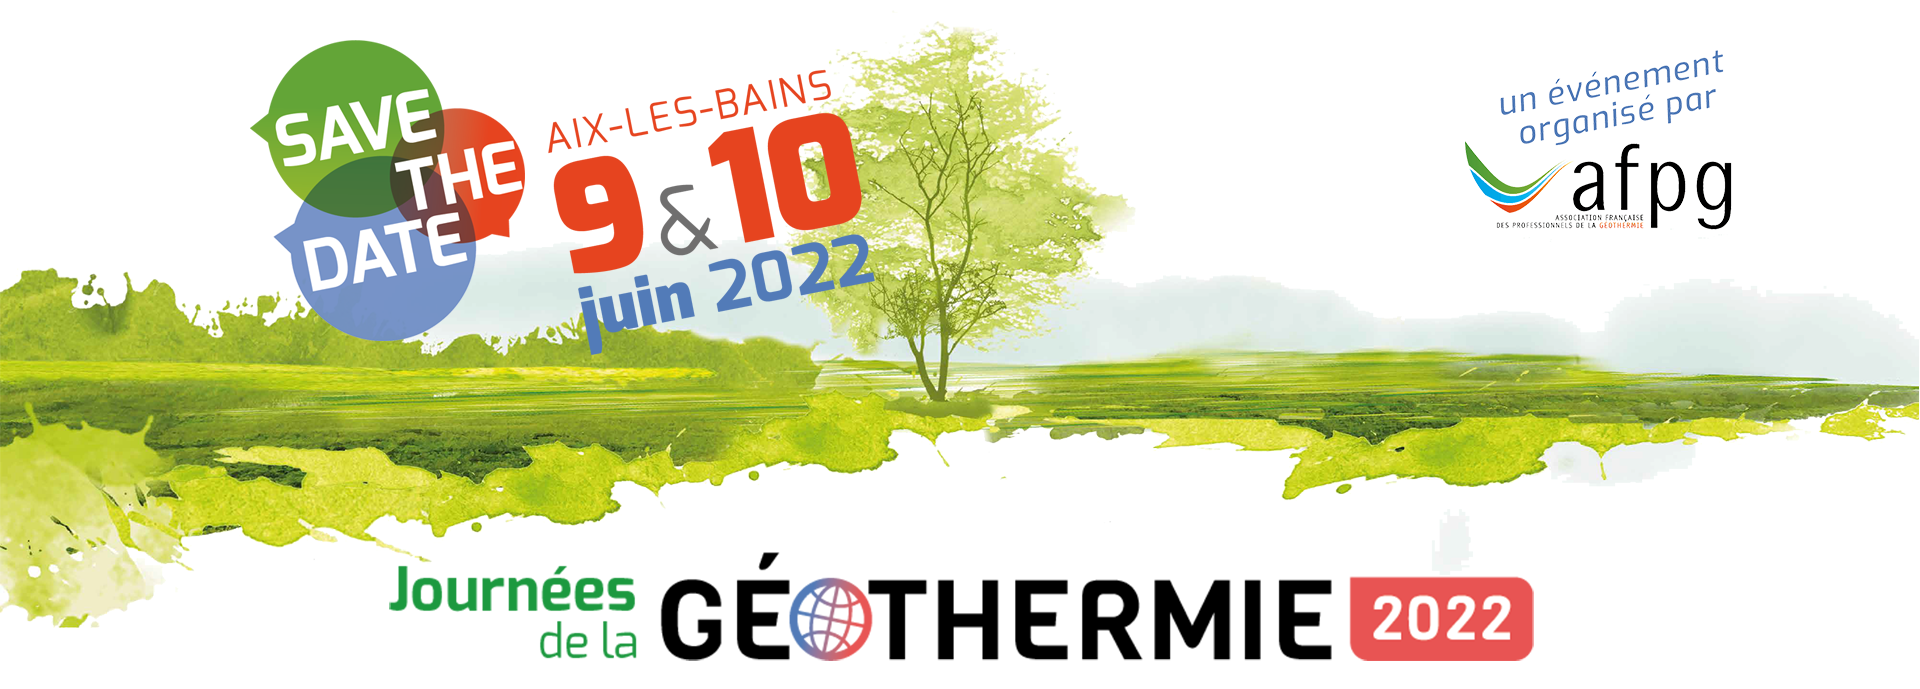 Journées de la géothermie à Aix-Les-Bains